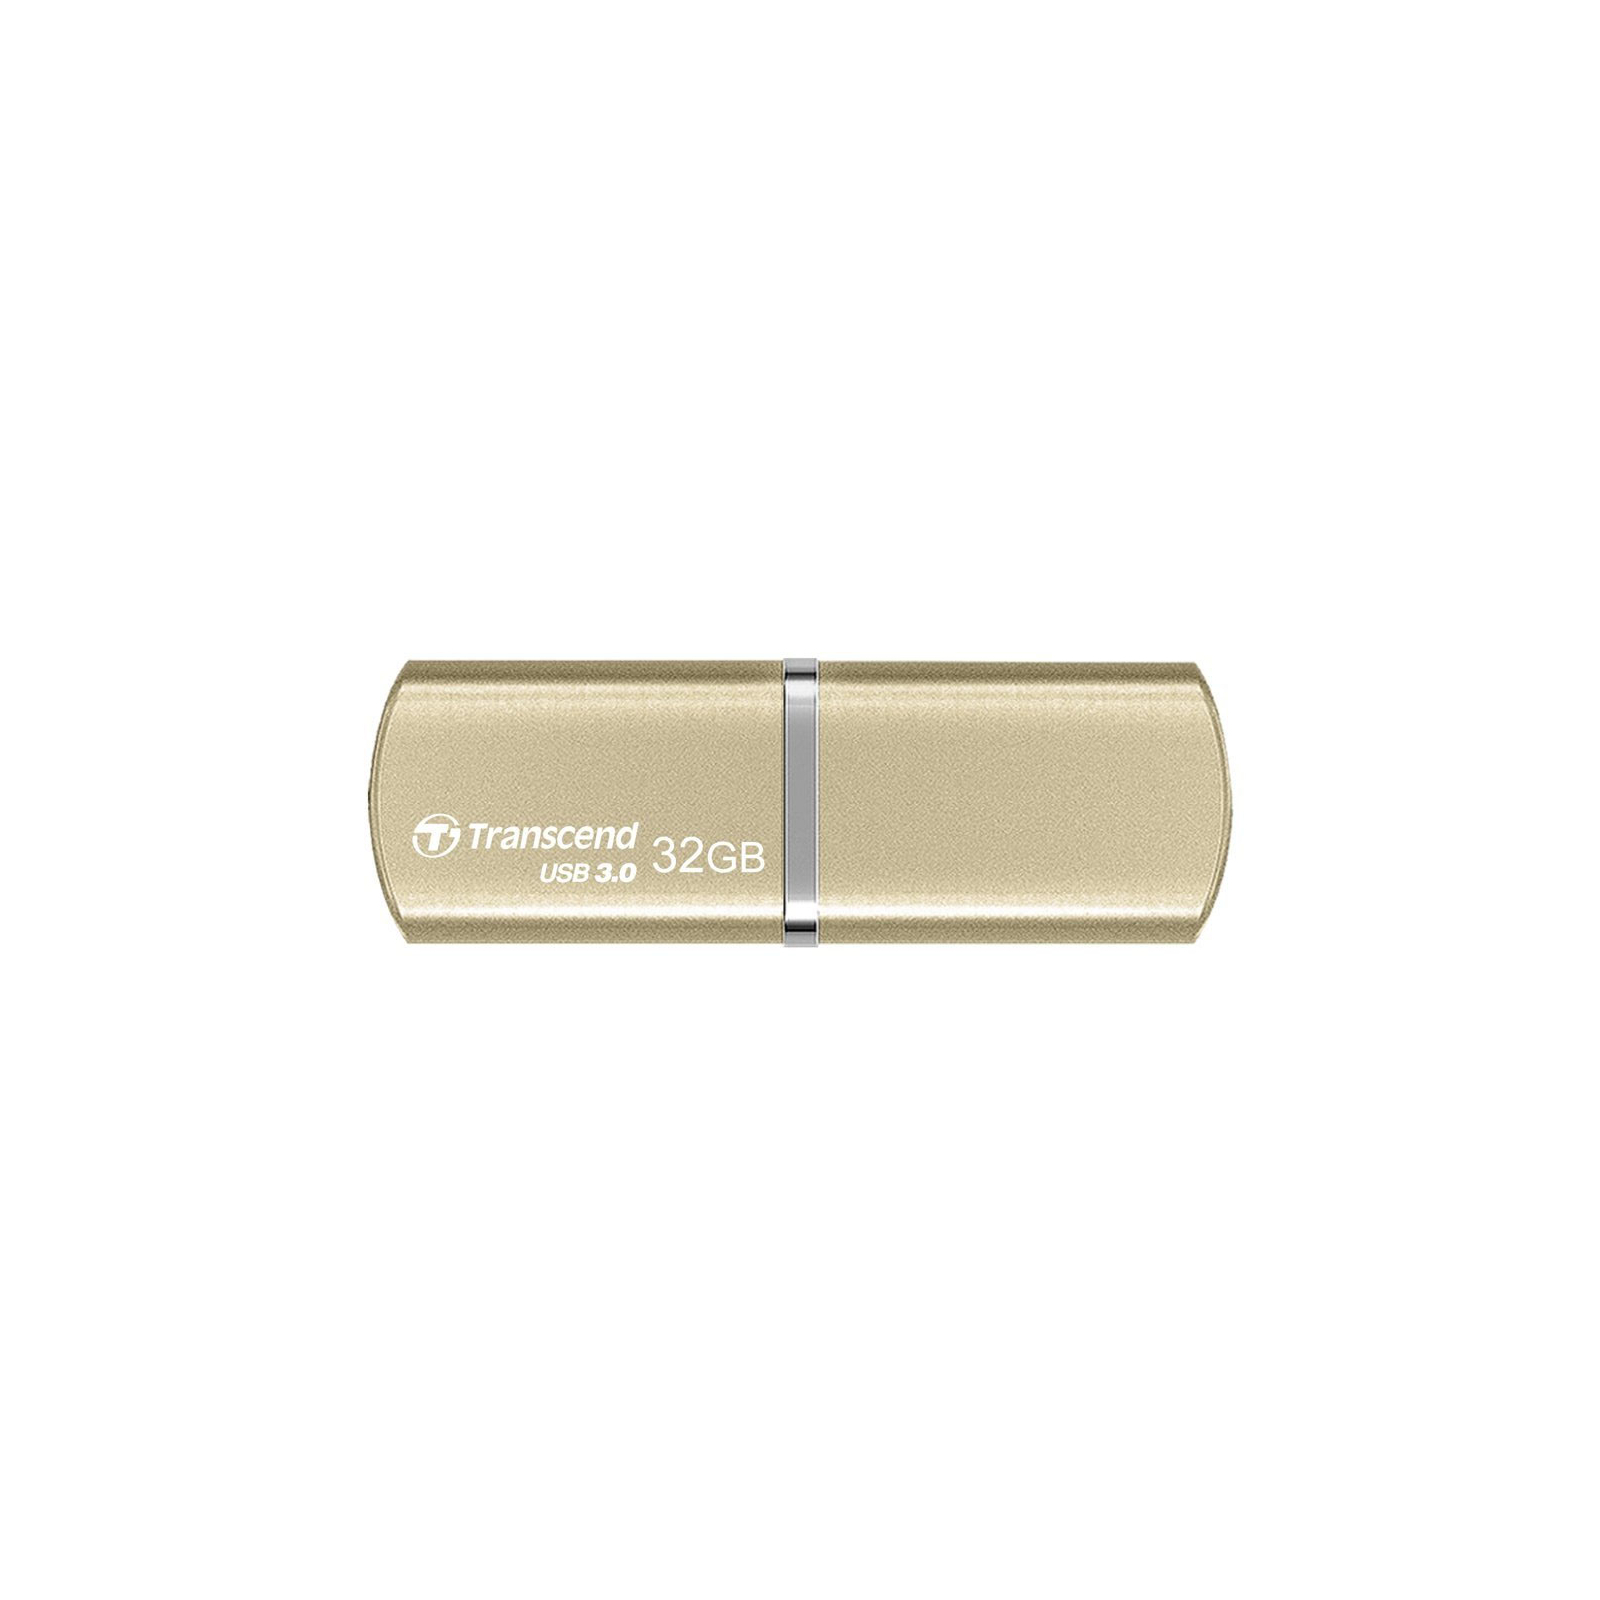 USB флеш накопитель Transcend 8GB JetFlash 820 USB 3.0 (TS8GJF820G)